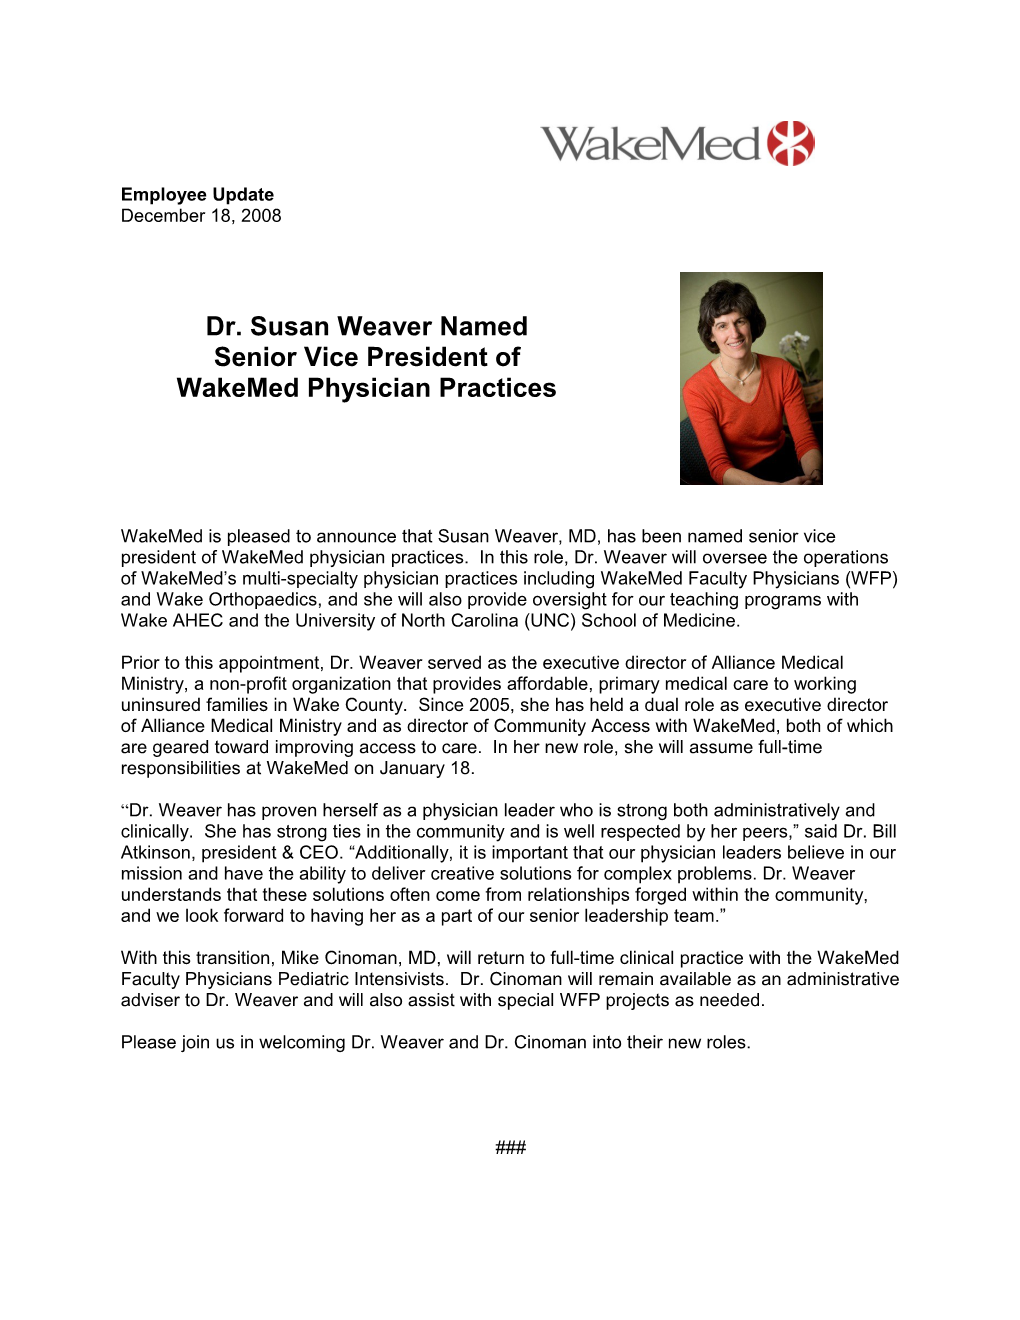 Dr. Susan Weaver Named